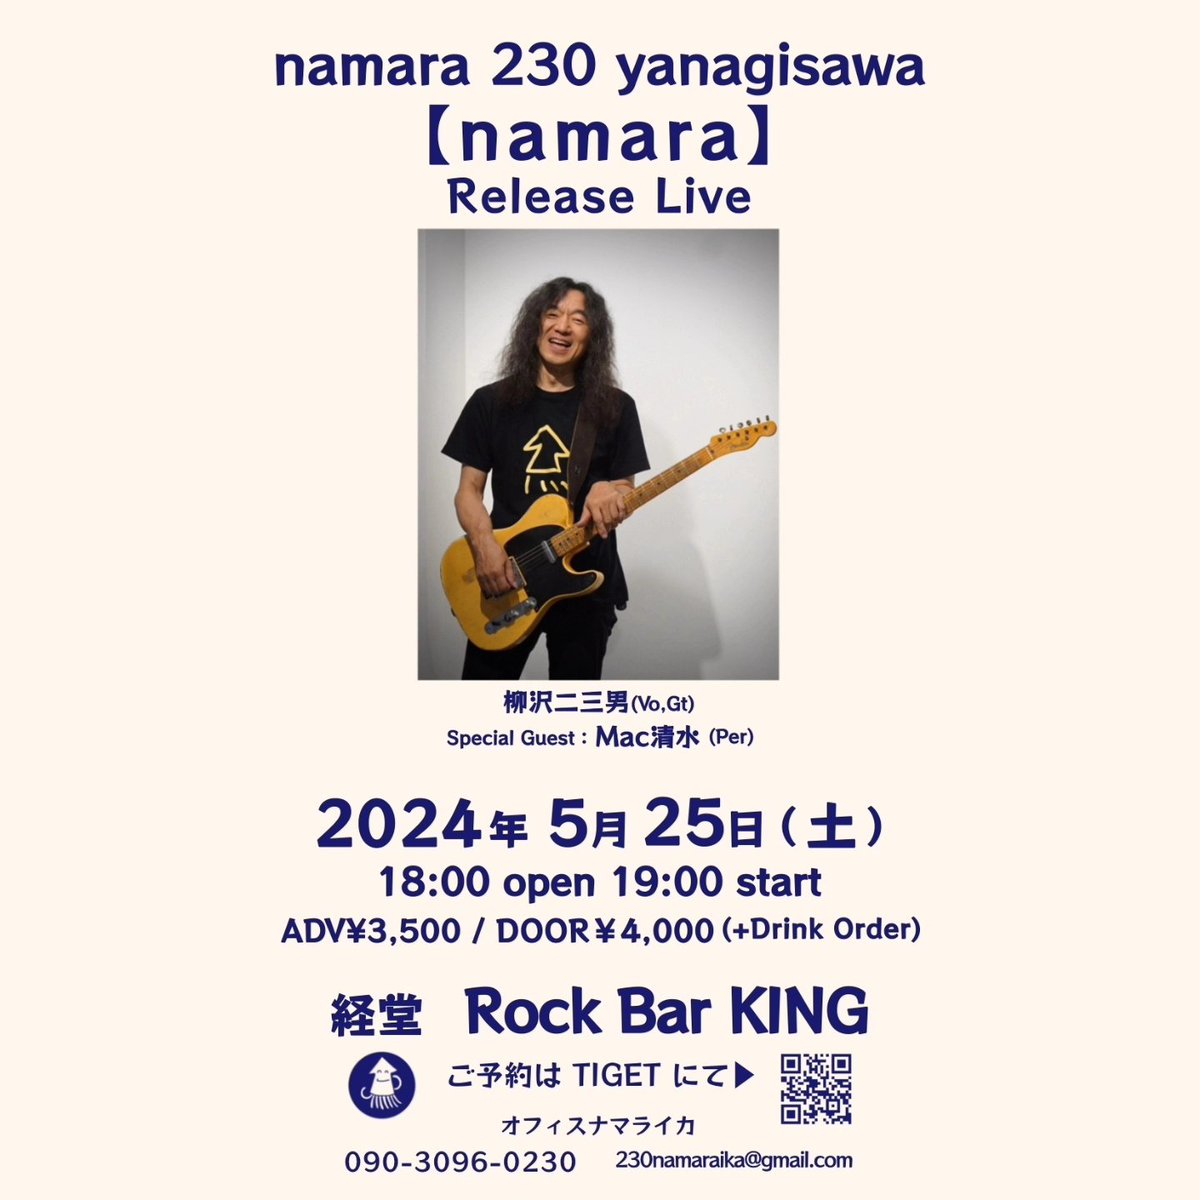 このあと19時から！

namara 230 yanagisawa
【namara】Release Live
経堂 Rock Bar King

#柳沢二三男 (Vo,Gt)
#Mac清水 (Per)

18:00 open / 19:00 start
予約￥3,500 / 当日￥4,000
(＋drink order)

直接のご来場も大歓迎です😊
なまらええ感じです♪

tiget.net/events/304258
090-3096-0230